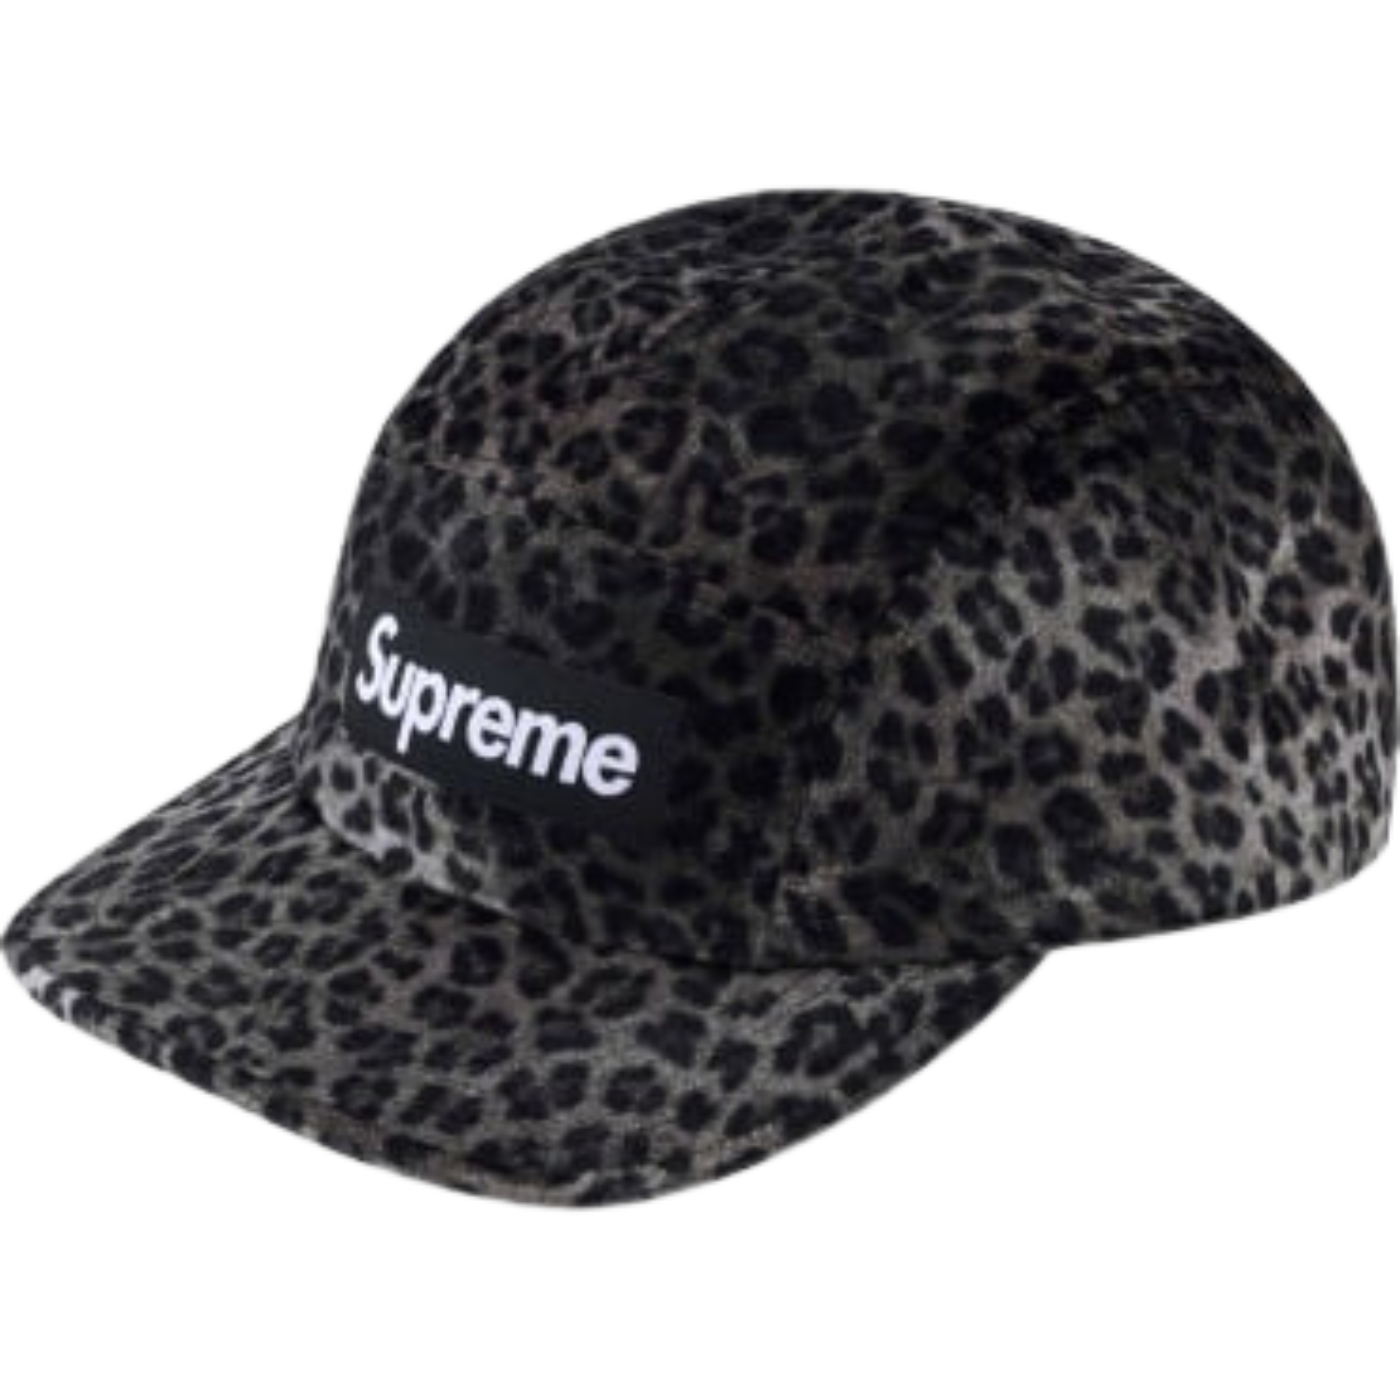 Boné Supreme Leopard Velvet Preto